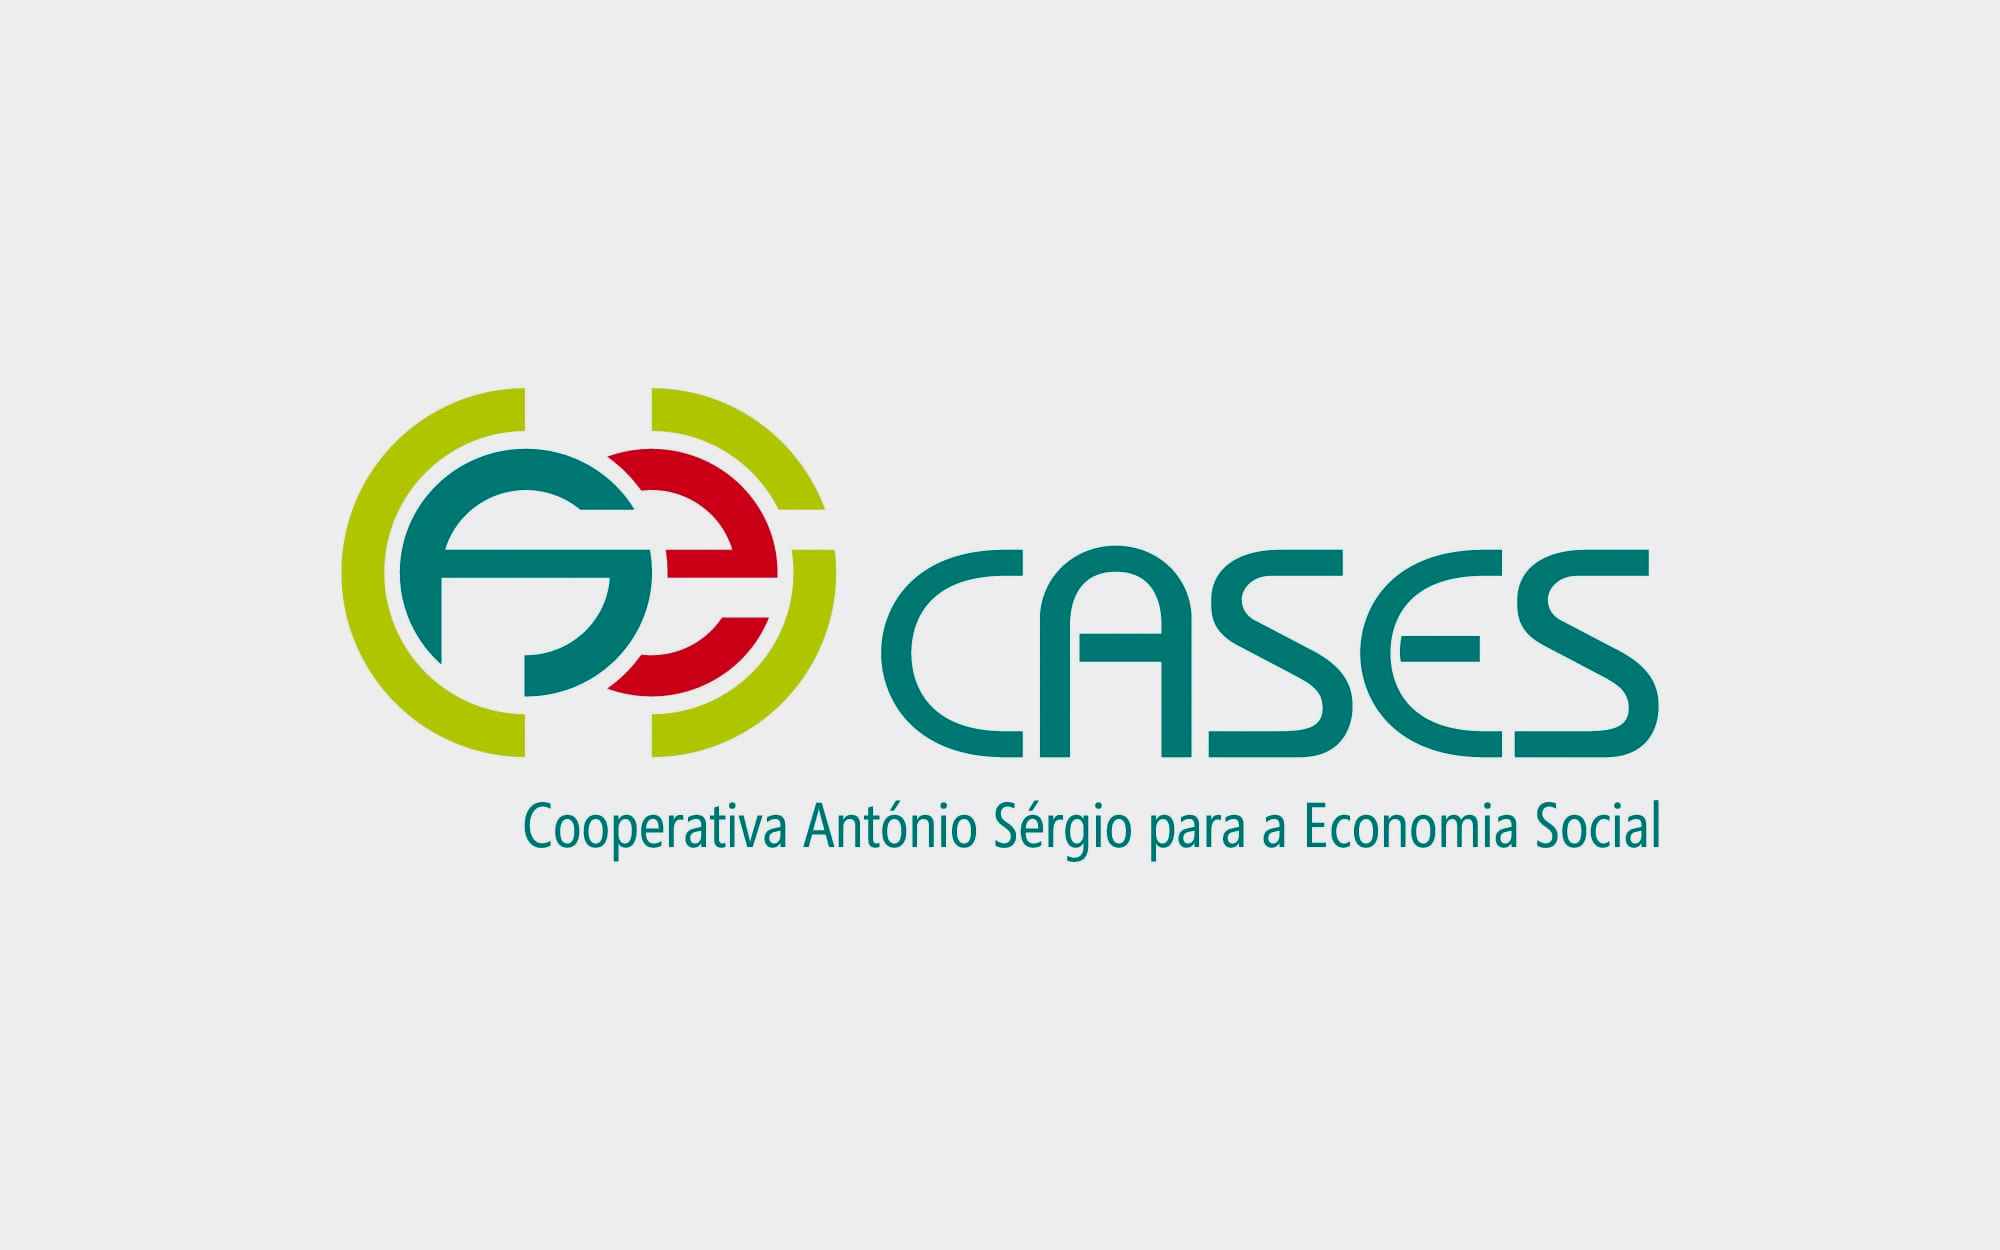 Cooperativa António Sérgio para a Economia Social - CASES